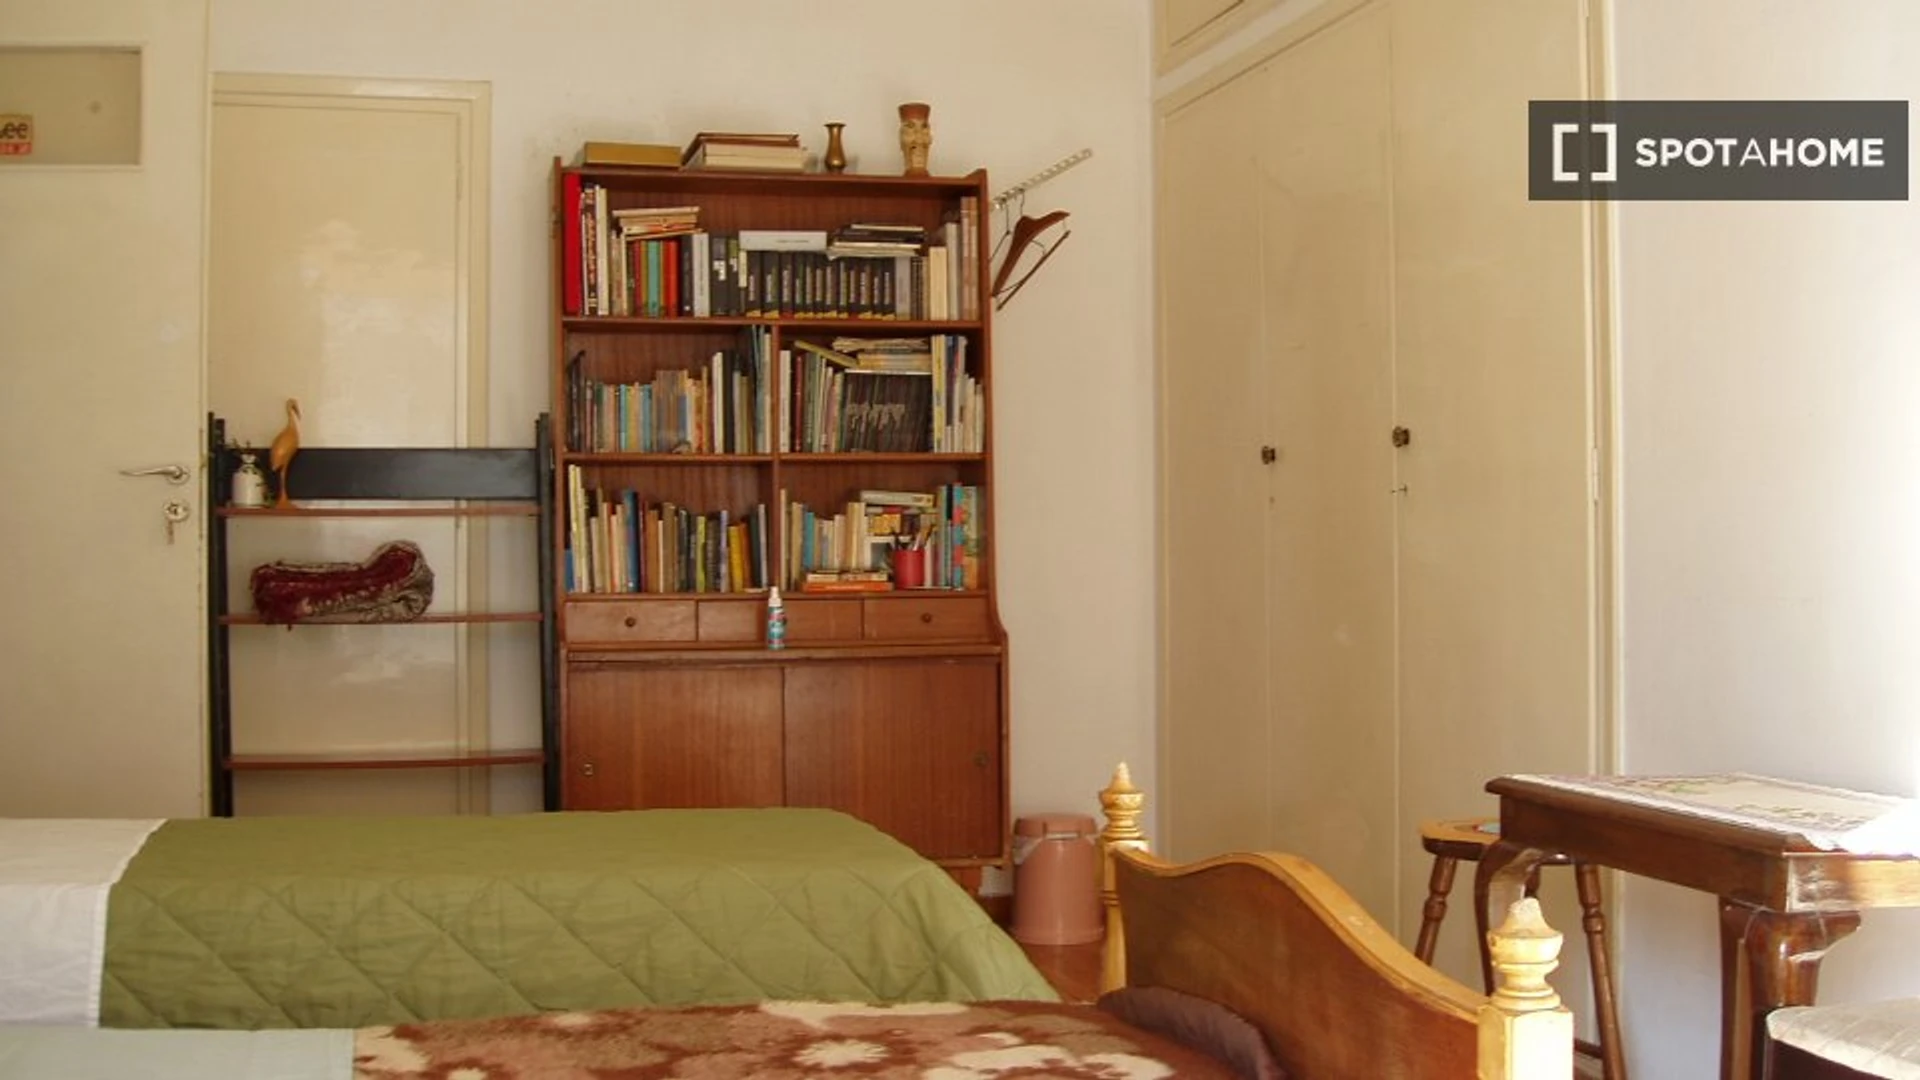 Alquiler de habitación en piso compartido en Atenas